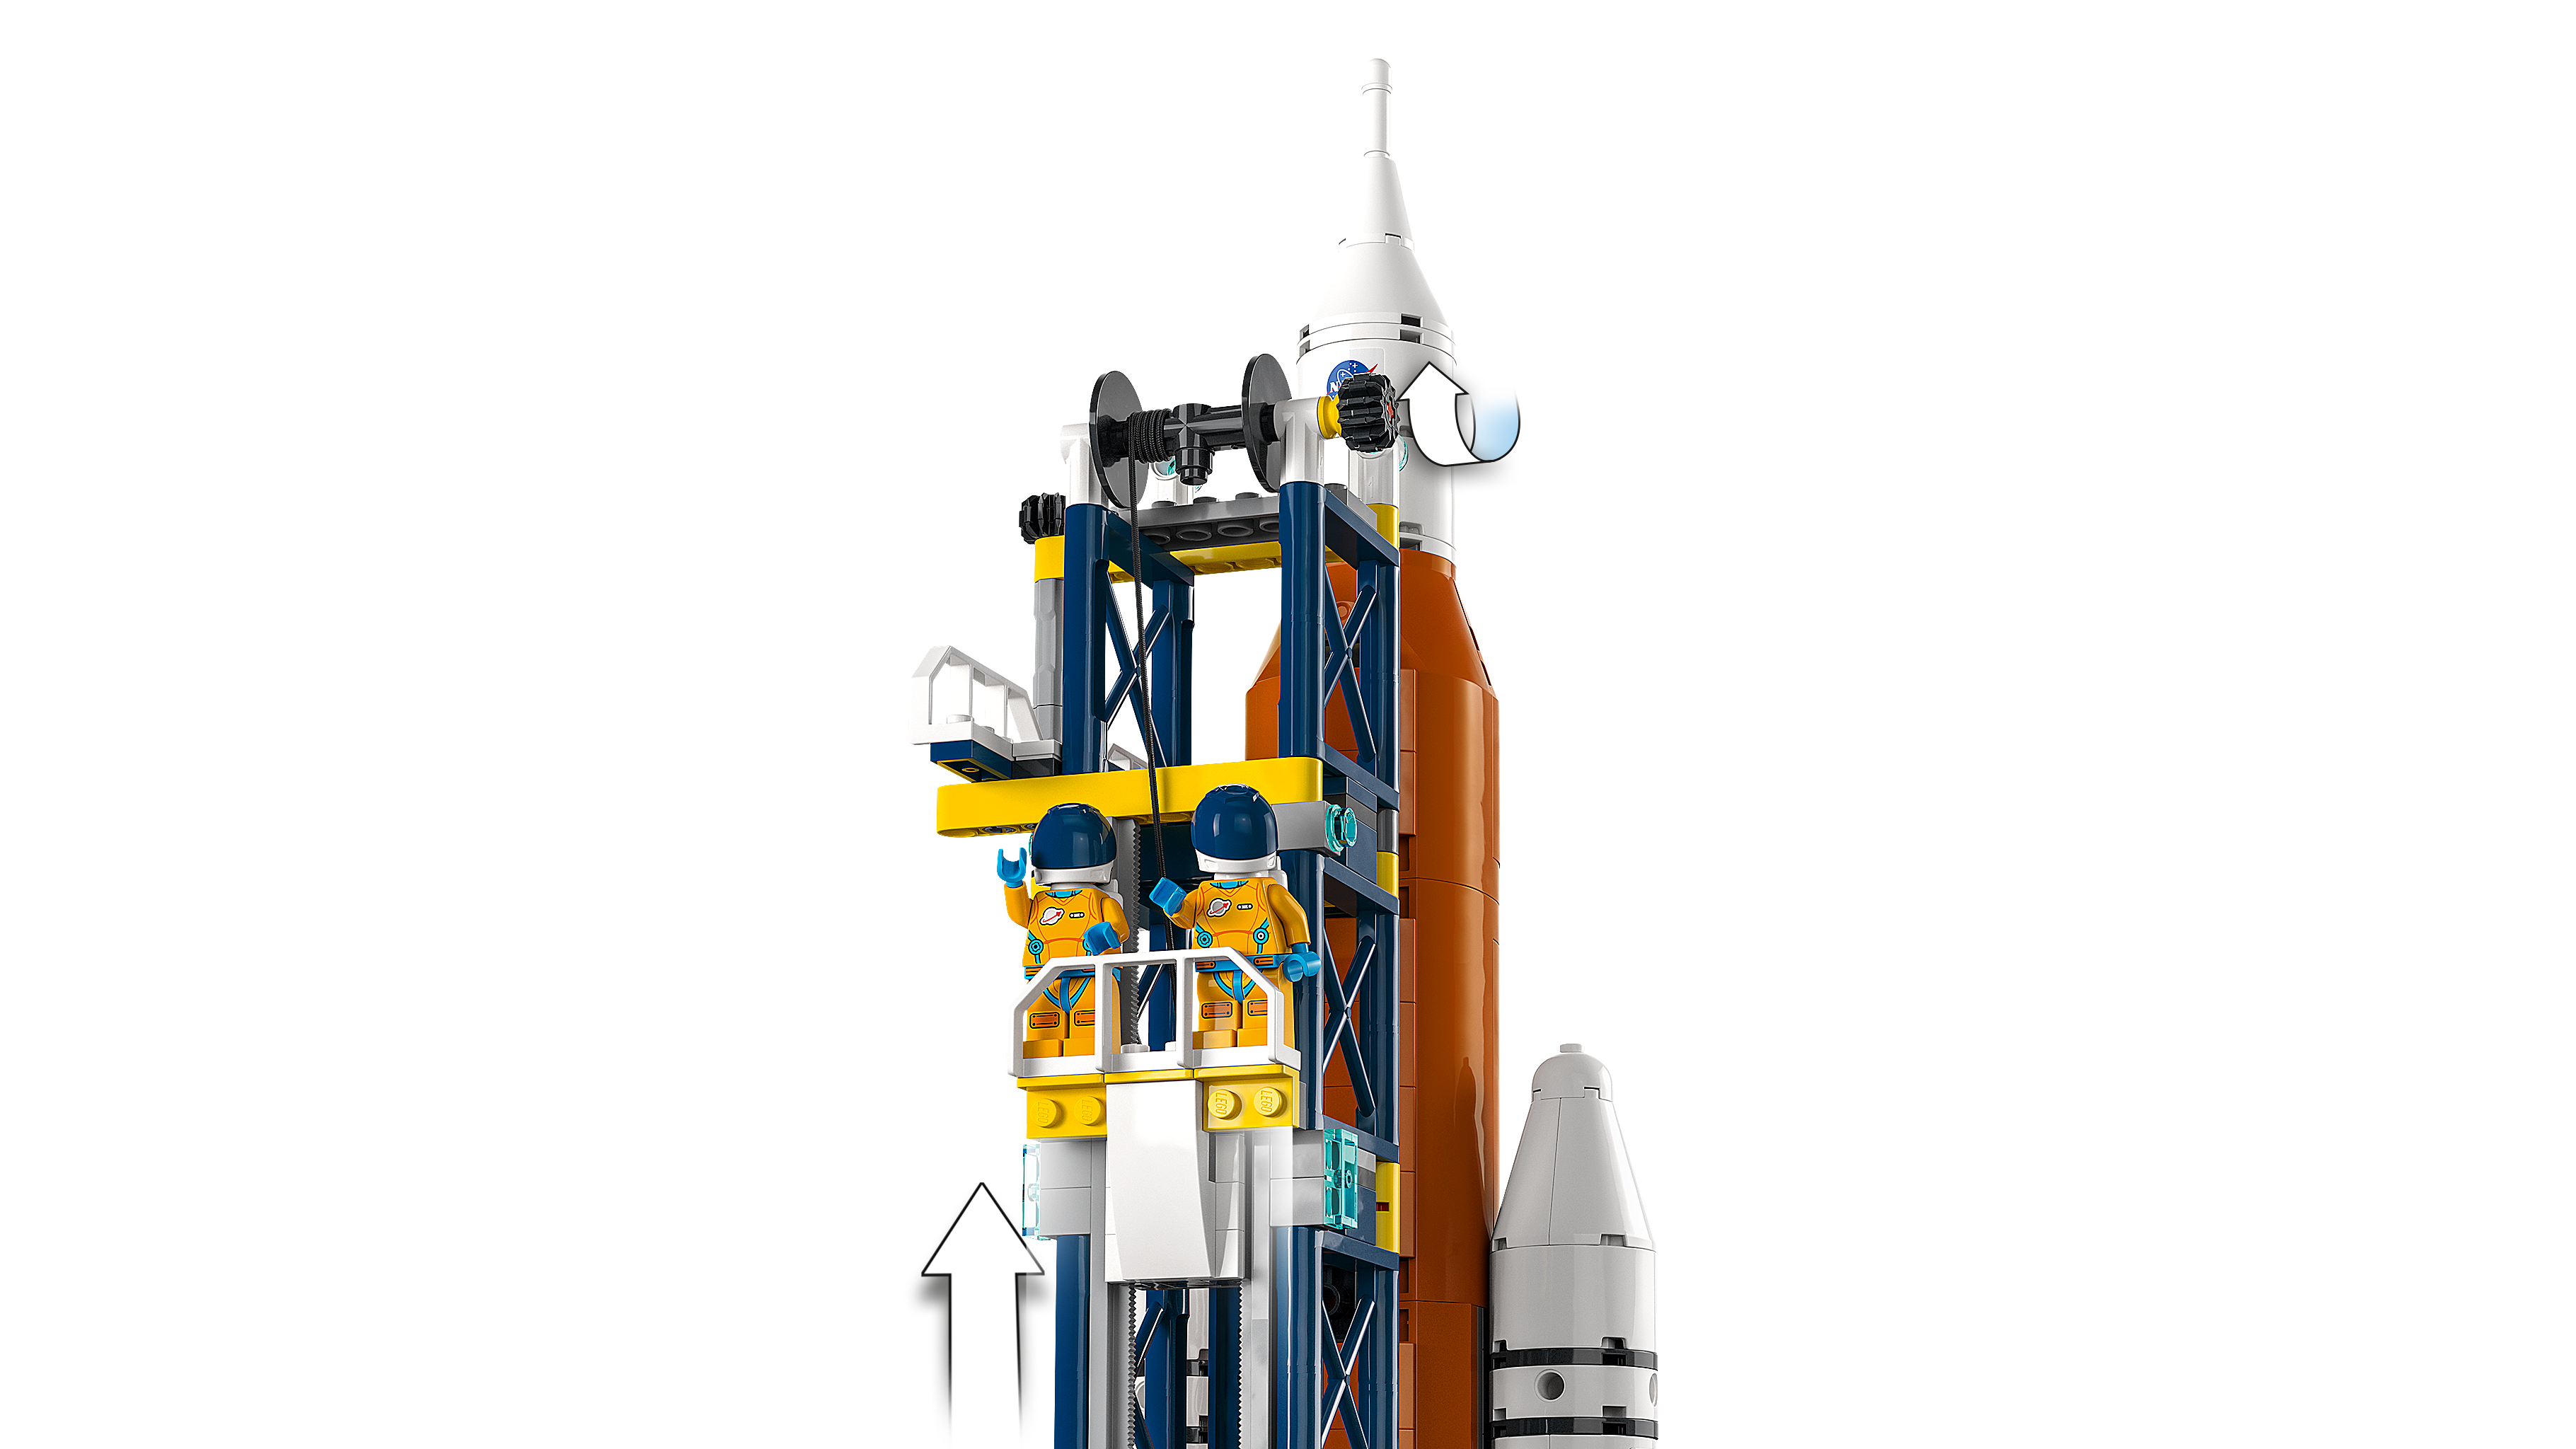 ロケット打ち上げセンター 60351 - レゴ®シティ セット - LEGO.comキッズ